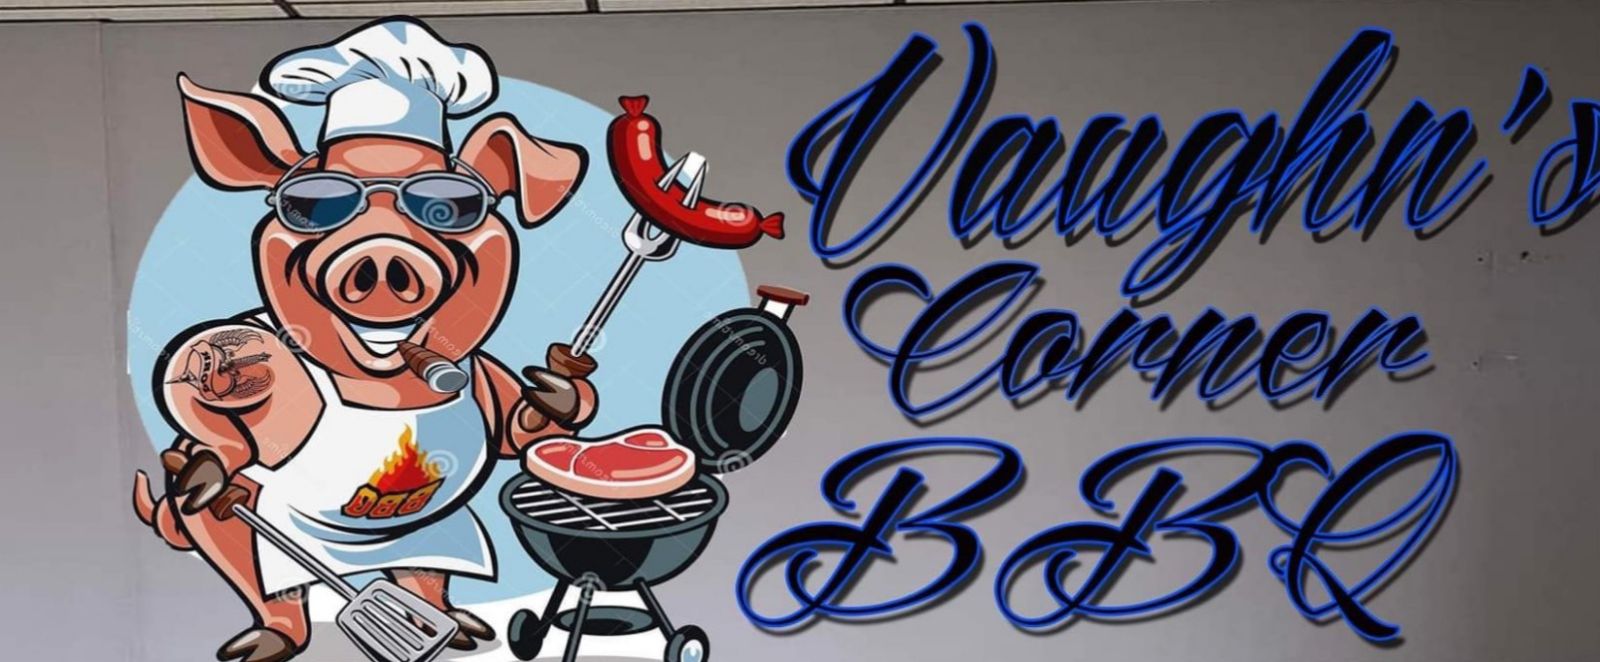 Vaughn’s Corner BBQ